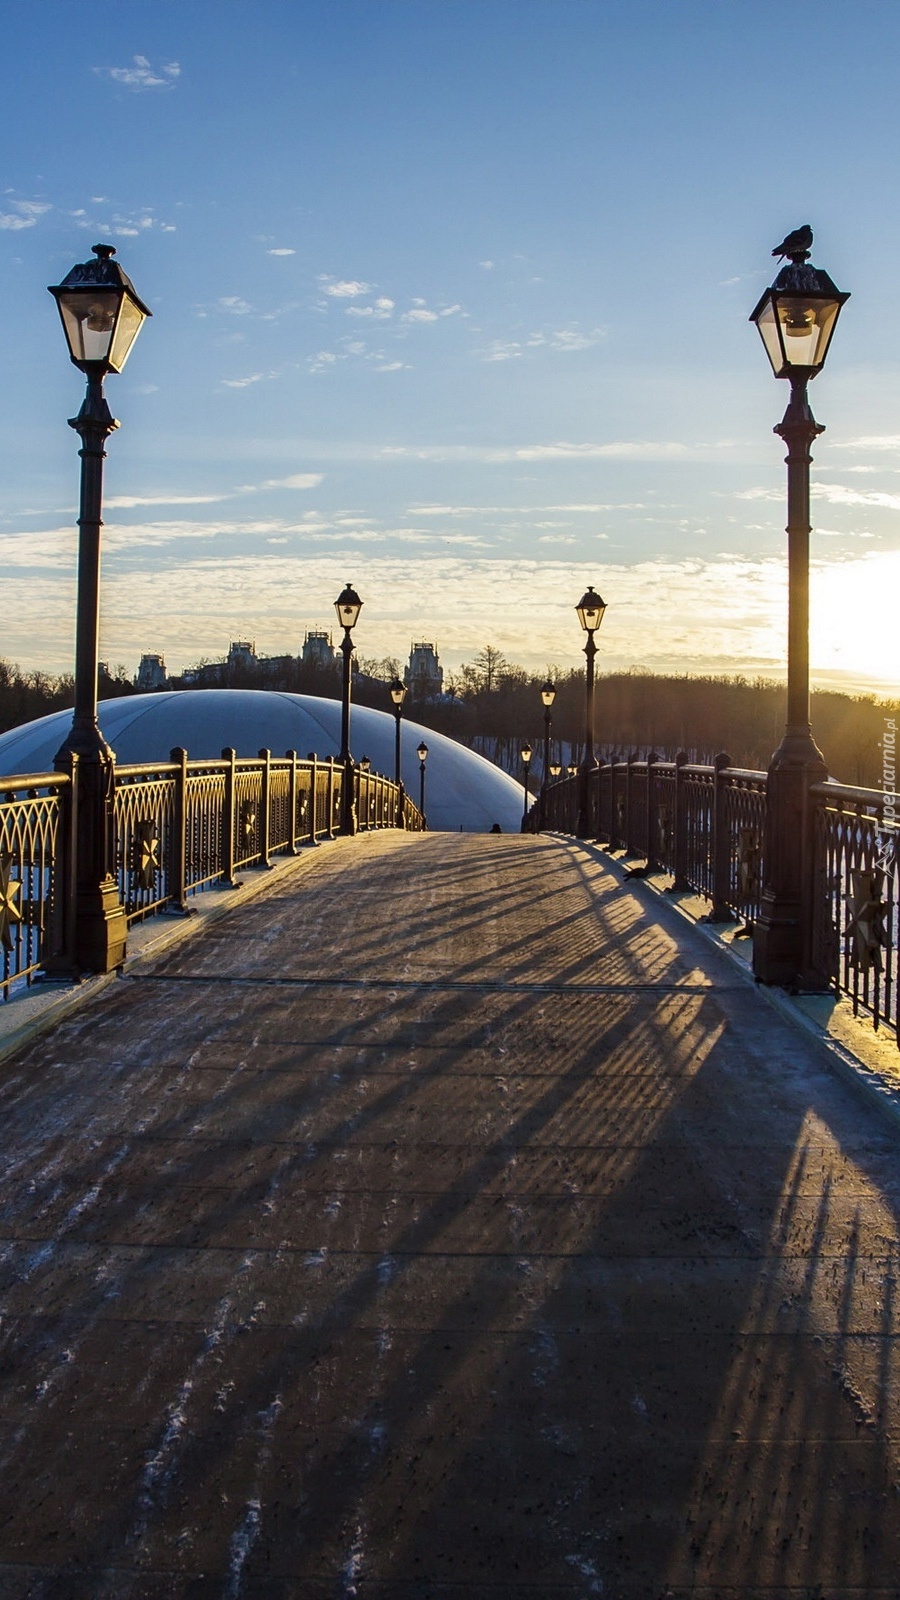 Zimowy wschód słońca nad mostem z latarniami